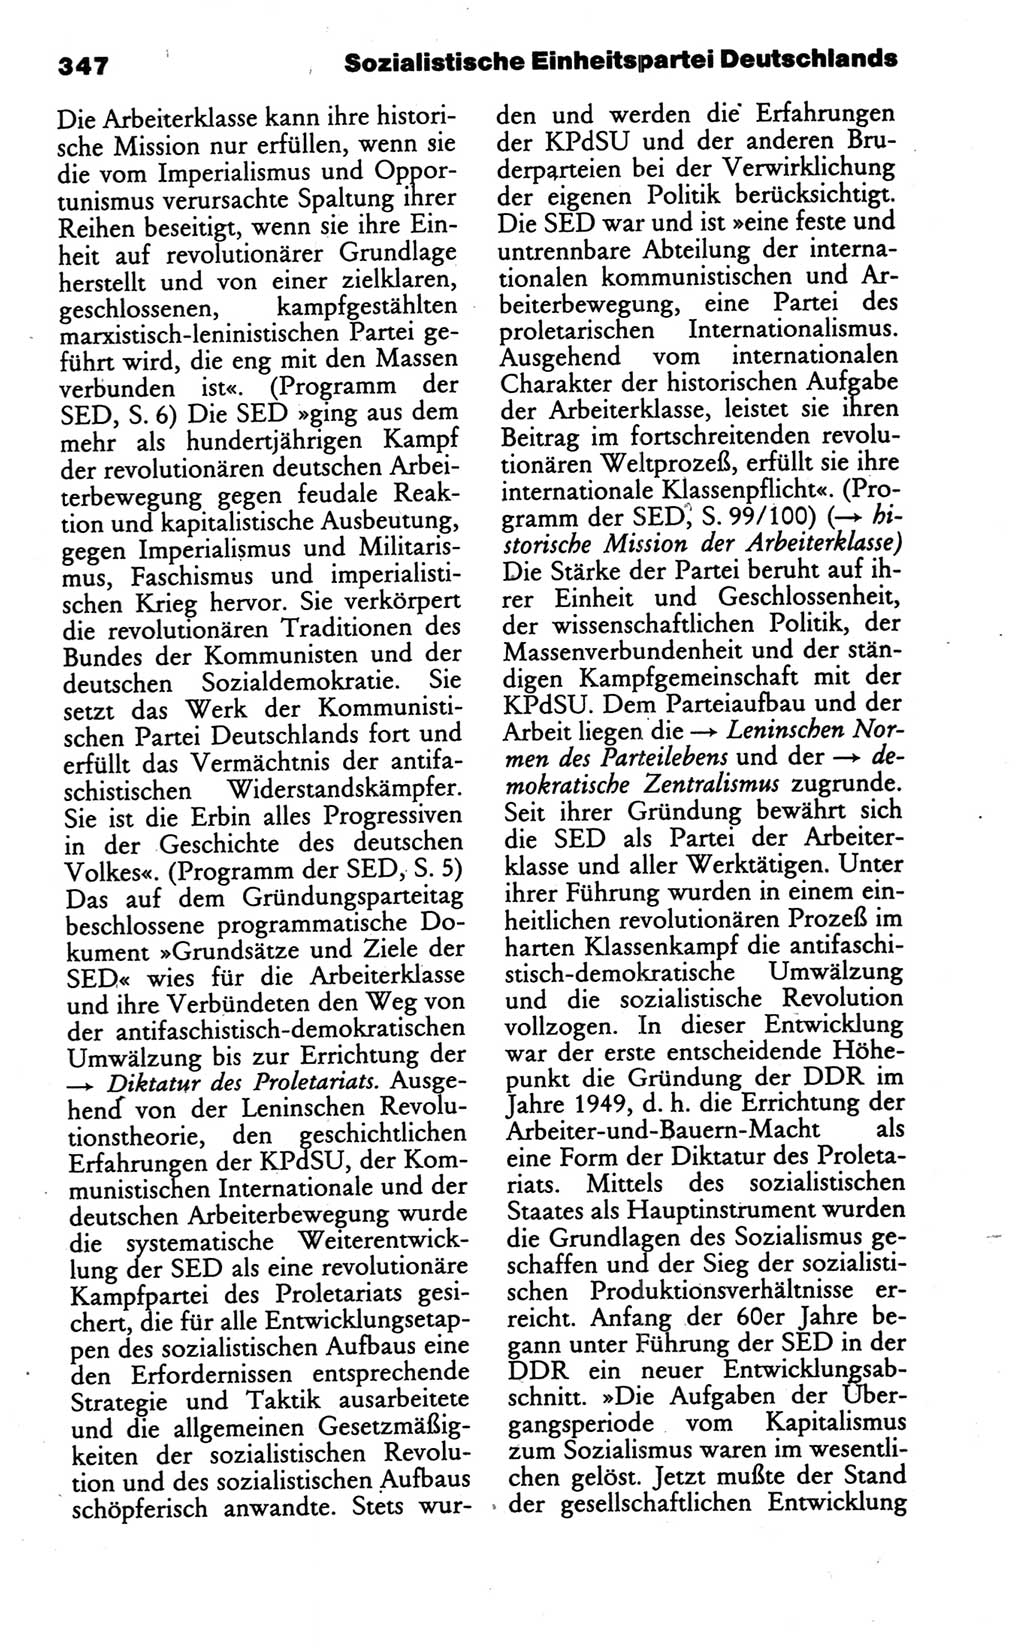 Wörterbuch des wissenschaftlichen Kommunismus [Deutsche Demokratische Republik (DDR)] 1986, Seite 347 (Wb. wiss. Komm. DDR 1986, S. 347)